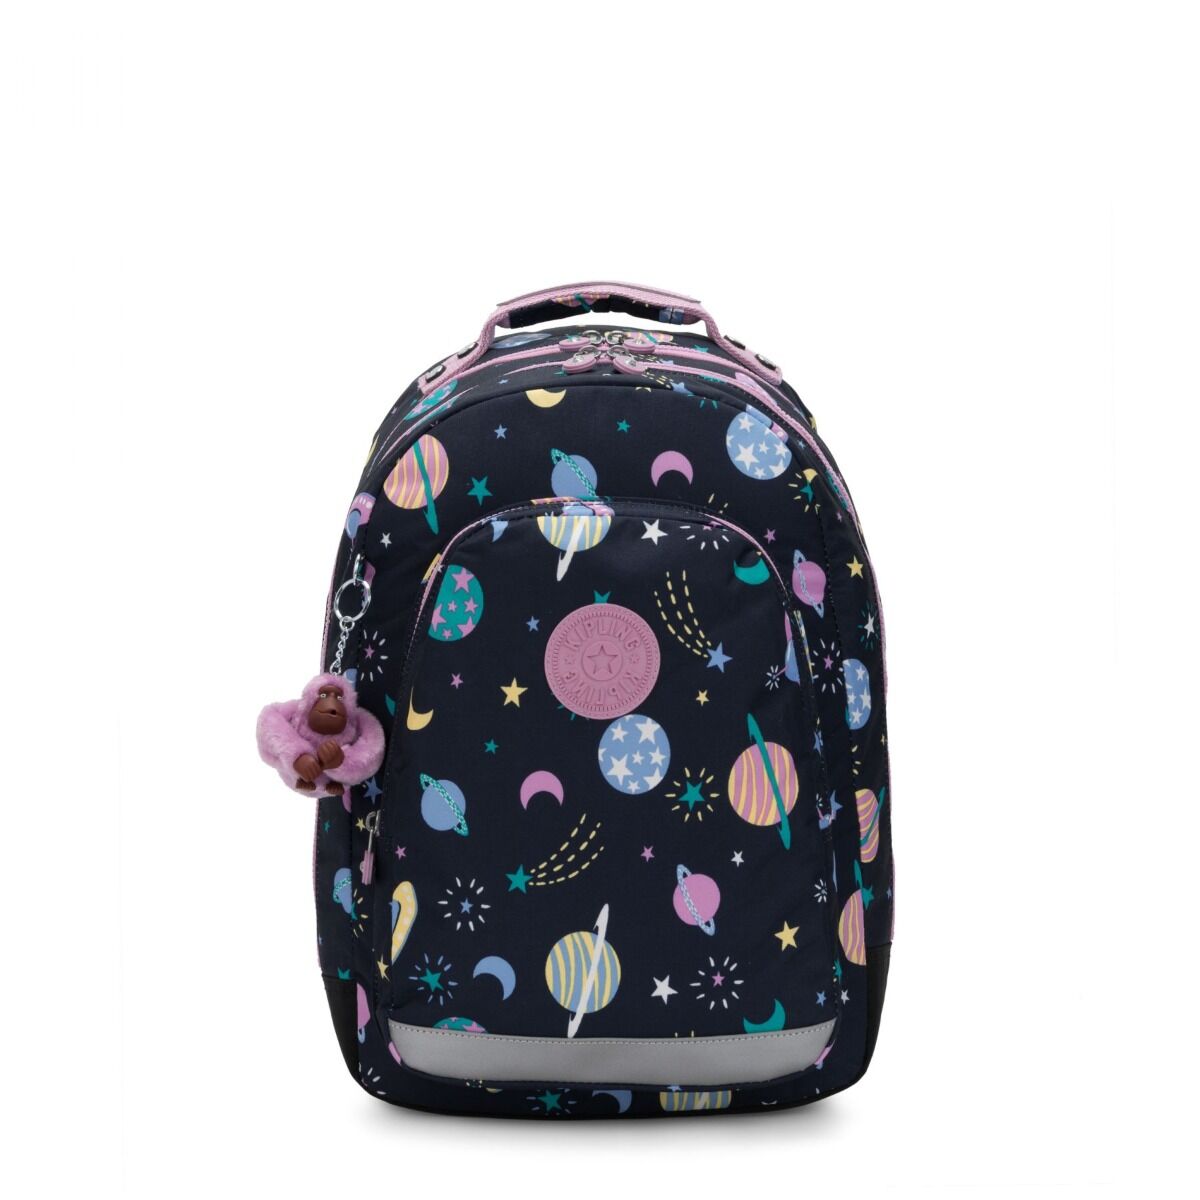 Kipling Class Room backpack-Galaxy Fun